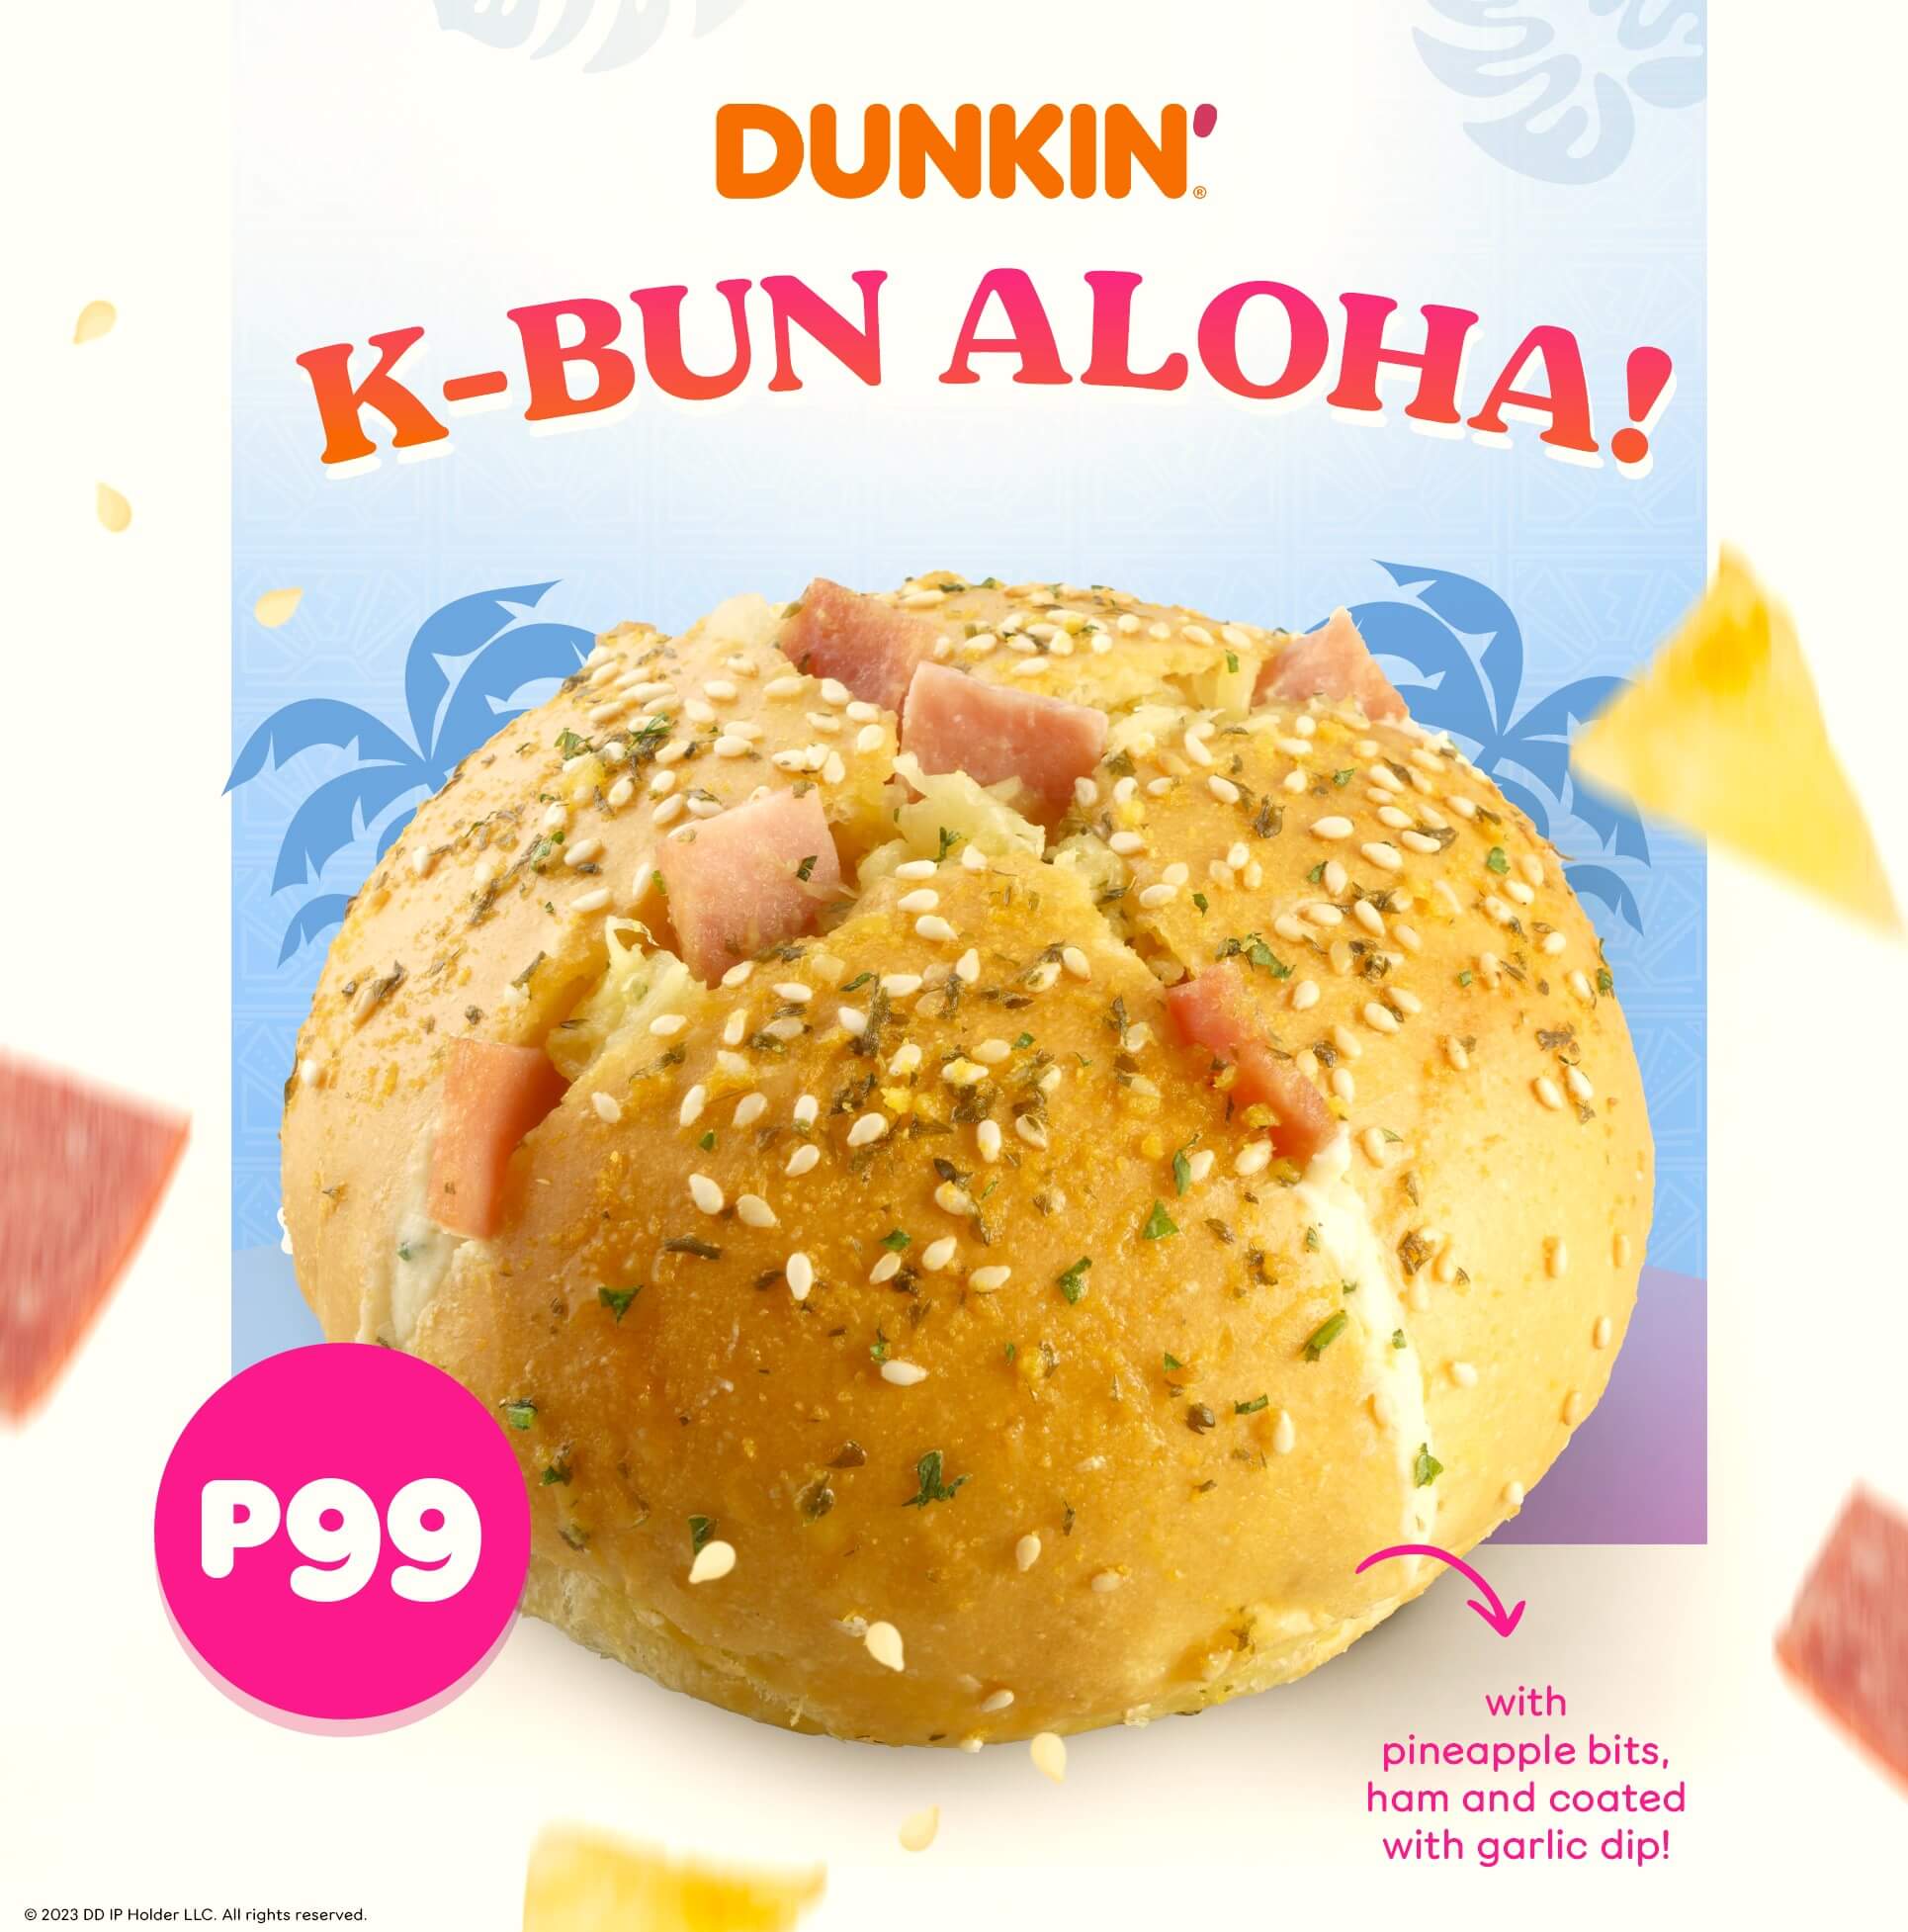 Dunkin K-Bun ALOHA